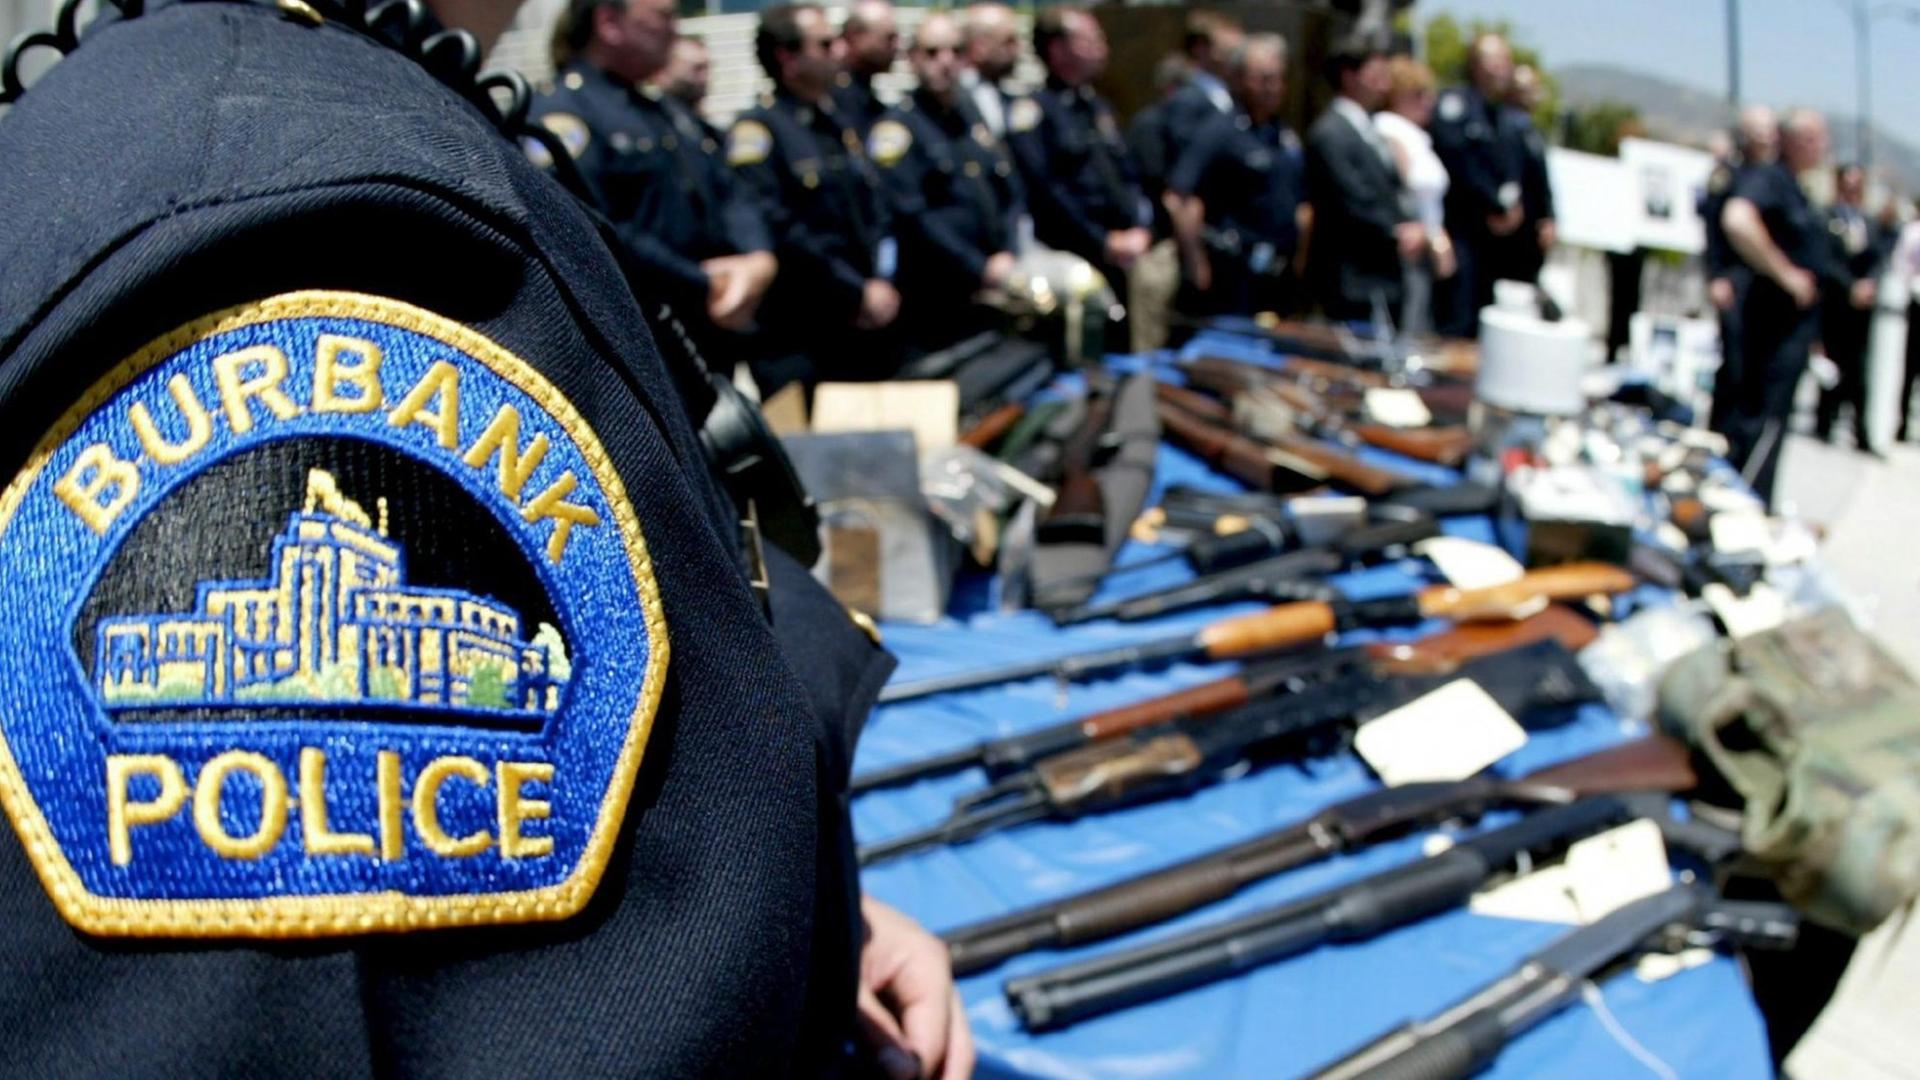 Die Polizei im US-amerikanischen Burbank hat 23 Mitglieder einer Straßenbande verhaftet - und präsentiert die sichergestellten Waffen